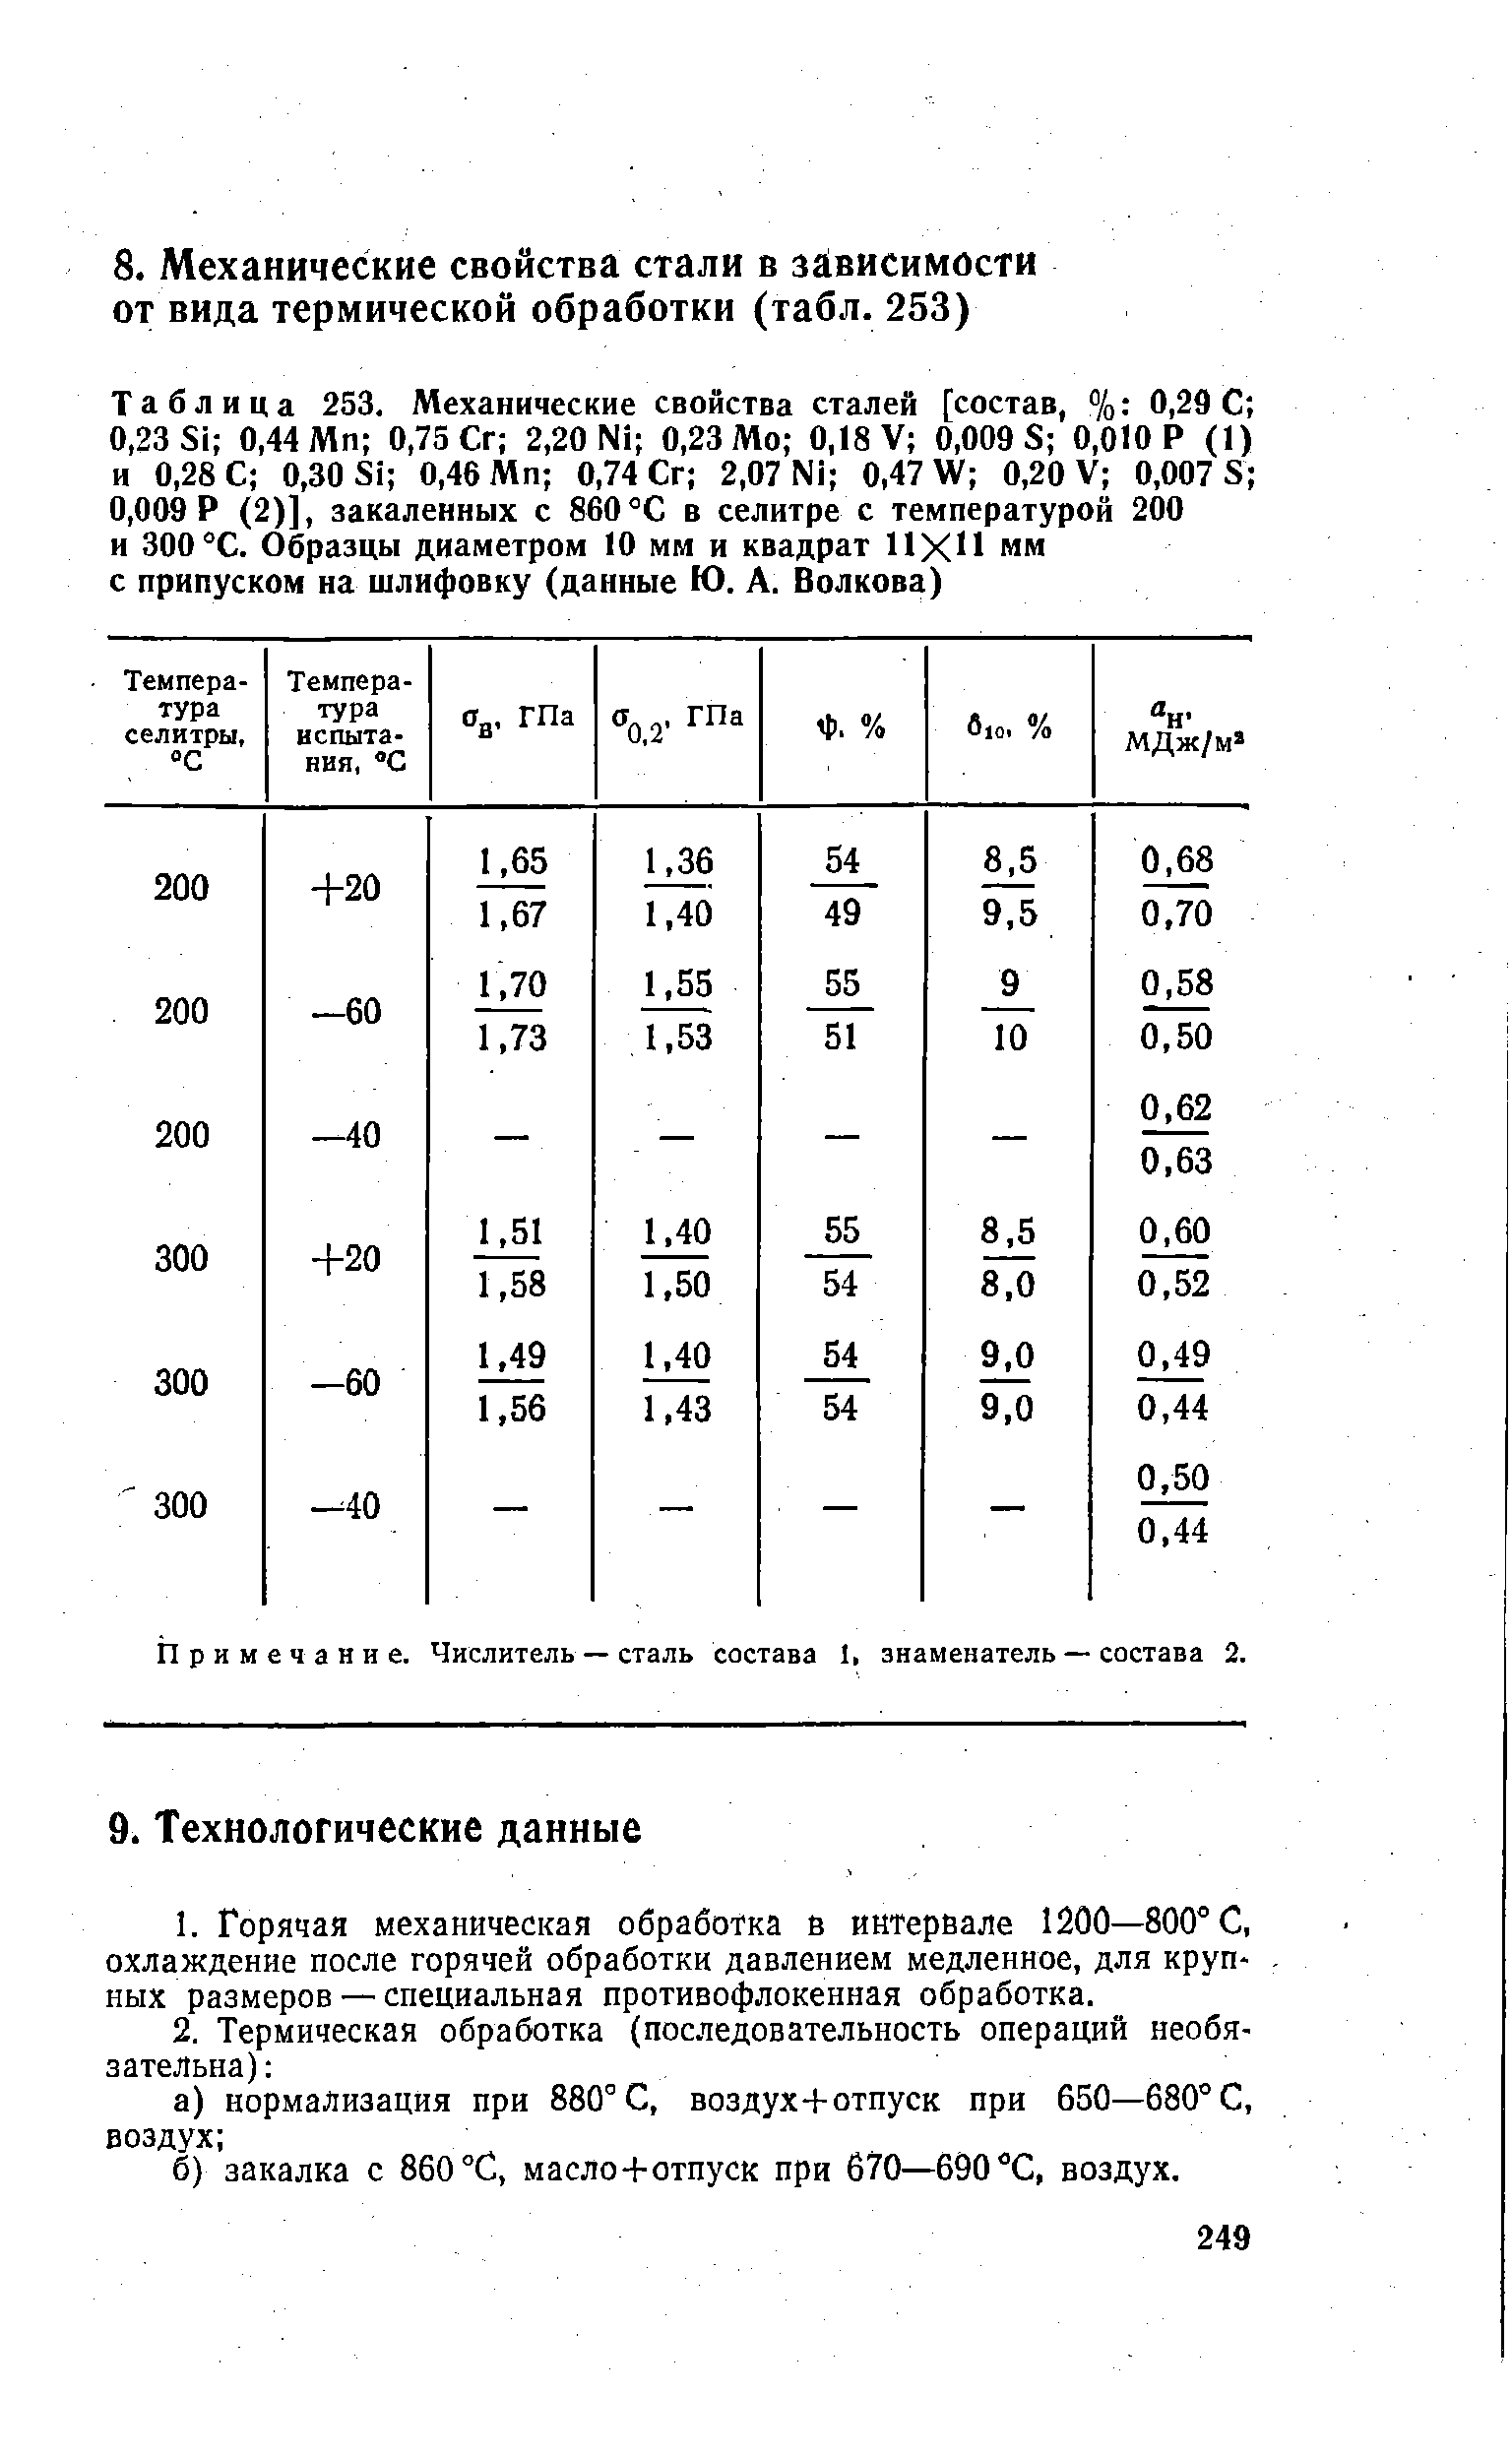 Таблица 253. <a href="/info/58648">Механические свойства сталей</a> [состав, % 0,29 С 0,23 Si 0,44 Мп 0,75 Сг 2,20 Ni 0,23 Мо 0,18 V 0,009 8 0,010 Р (1) и 0,28 С 0,30 Si 0,46 Мп 0,74 Сг 2,07 Ni 0,47 W 0,20 V 0,007 S 0,009 Р (2)], закаленных с 860 °С в селитре с температурой 200 и 300°С. Образцы диаметром 10 мм и квадрат ИХН мм с припуском на шлифовку (данные Ю. А. Волкова)
